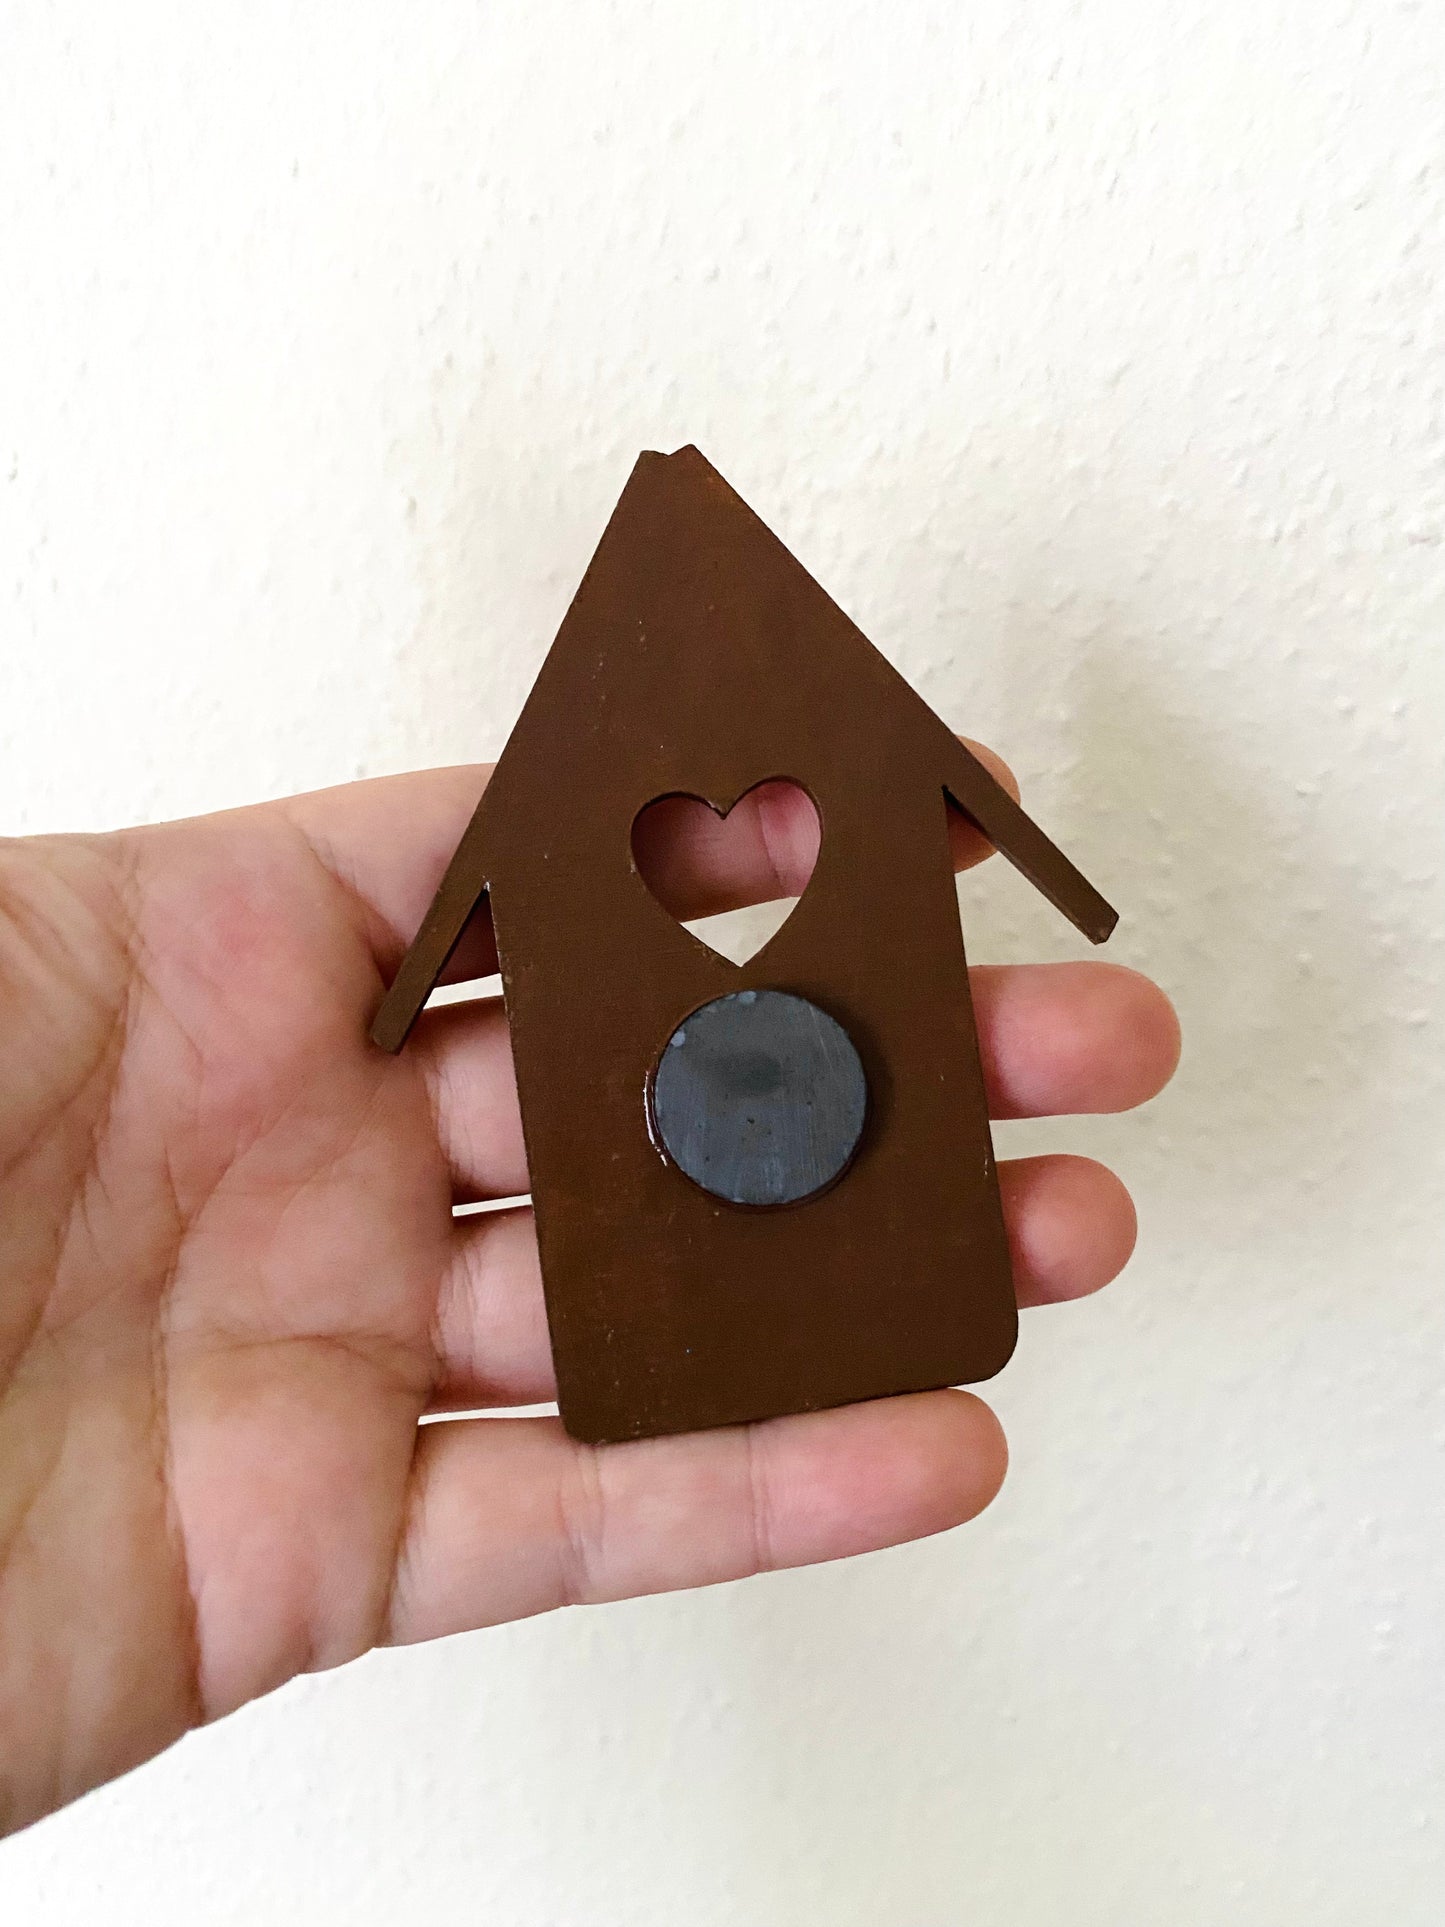 Hand-painted “gingerbread” house magnet / Kézzel festett “mézeskalács” házikó mágnes